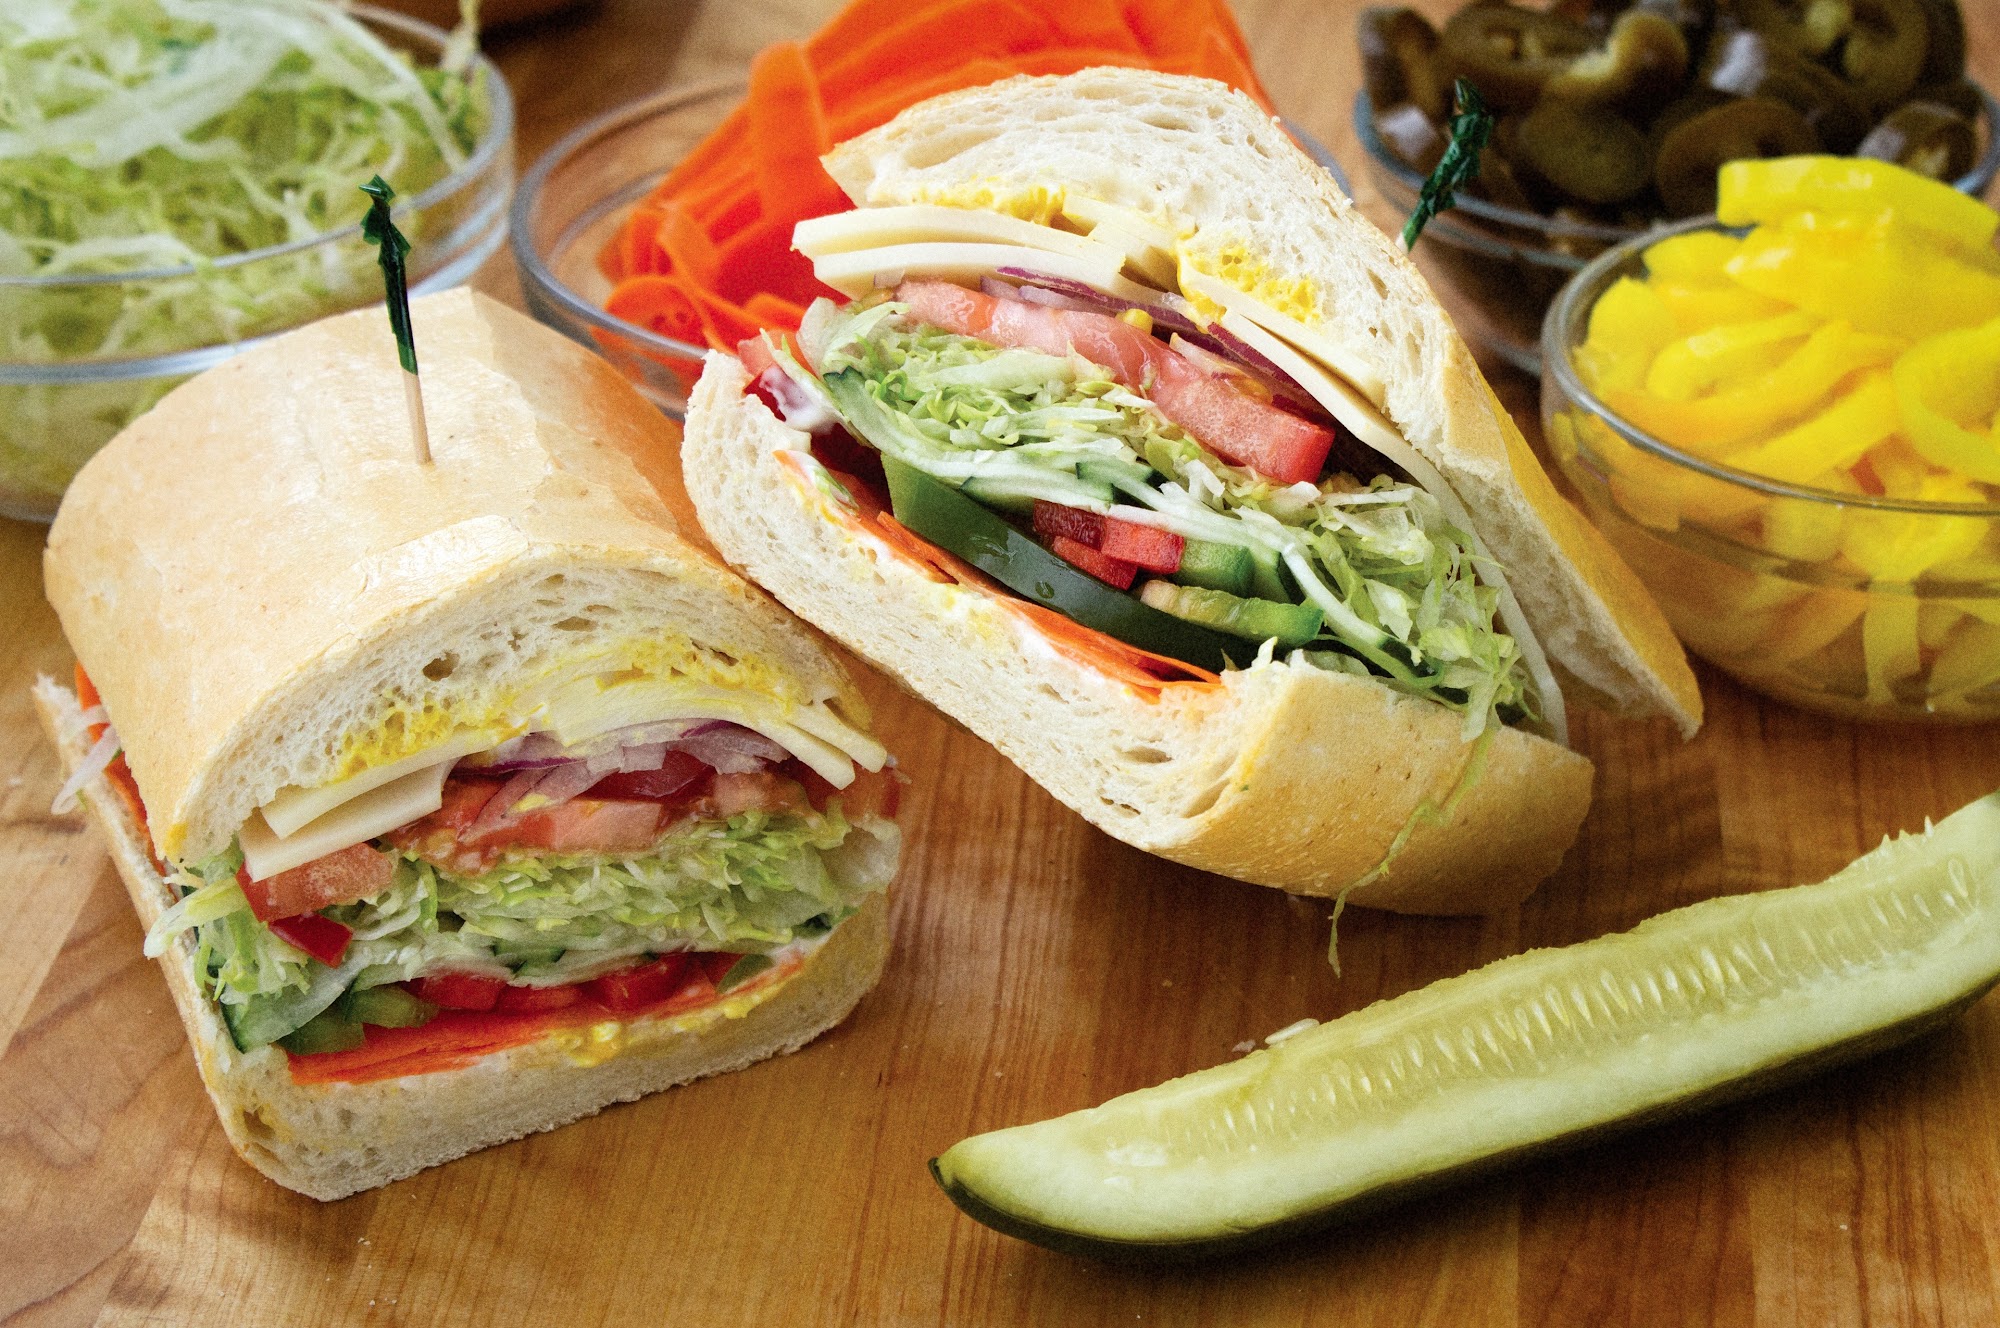 Sonoma Sourdough Sandwiches